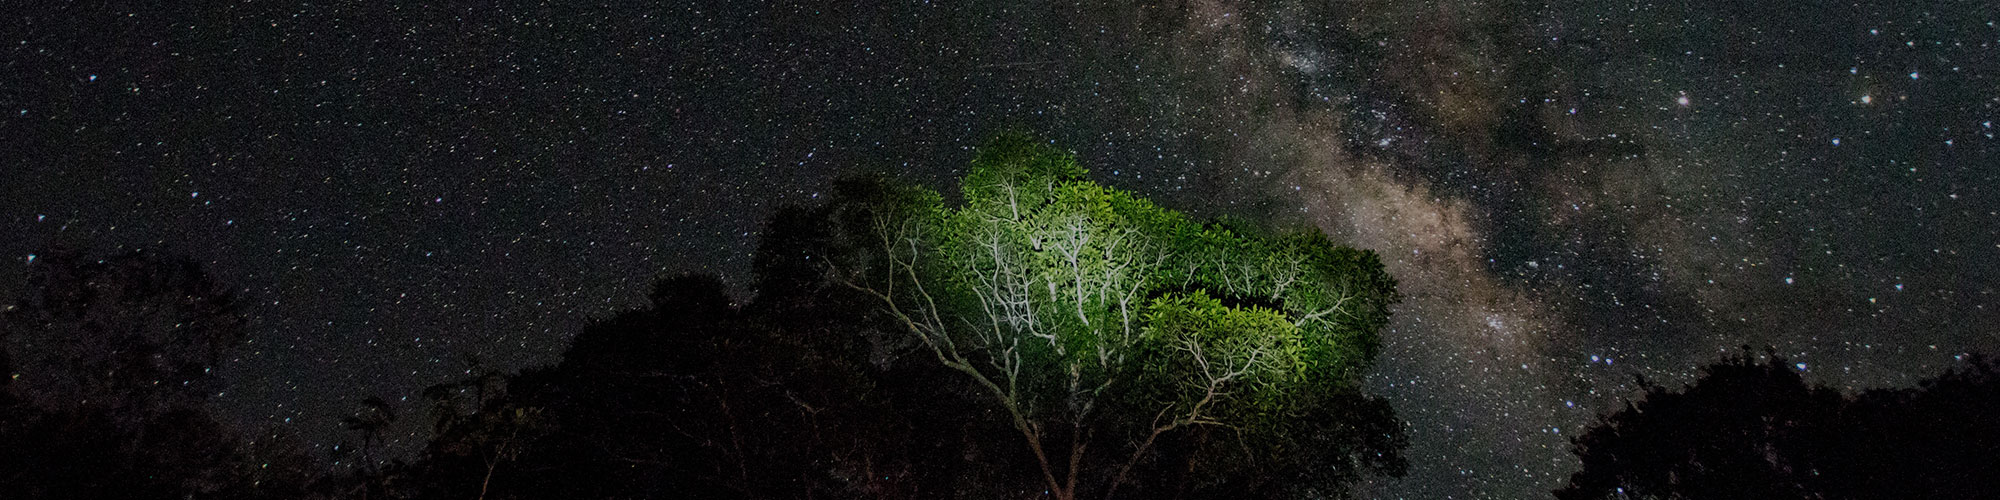 Amazon Rain Forest at Night